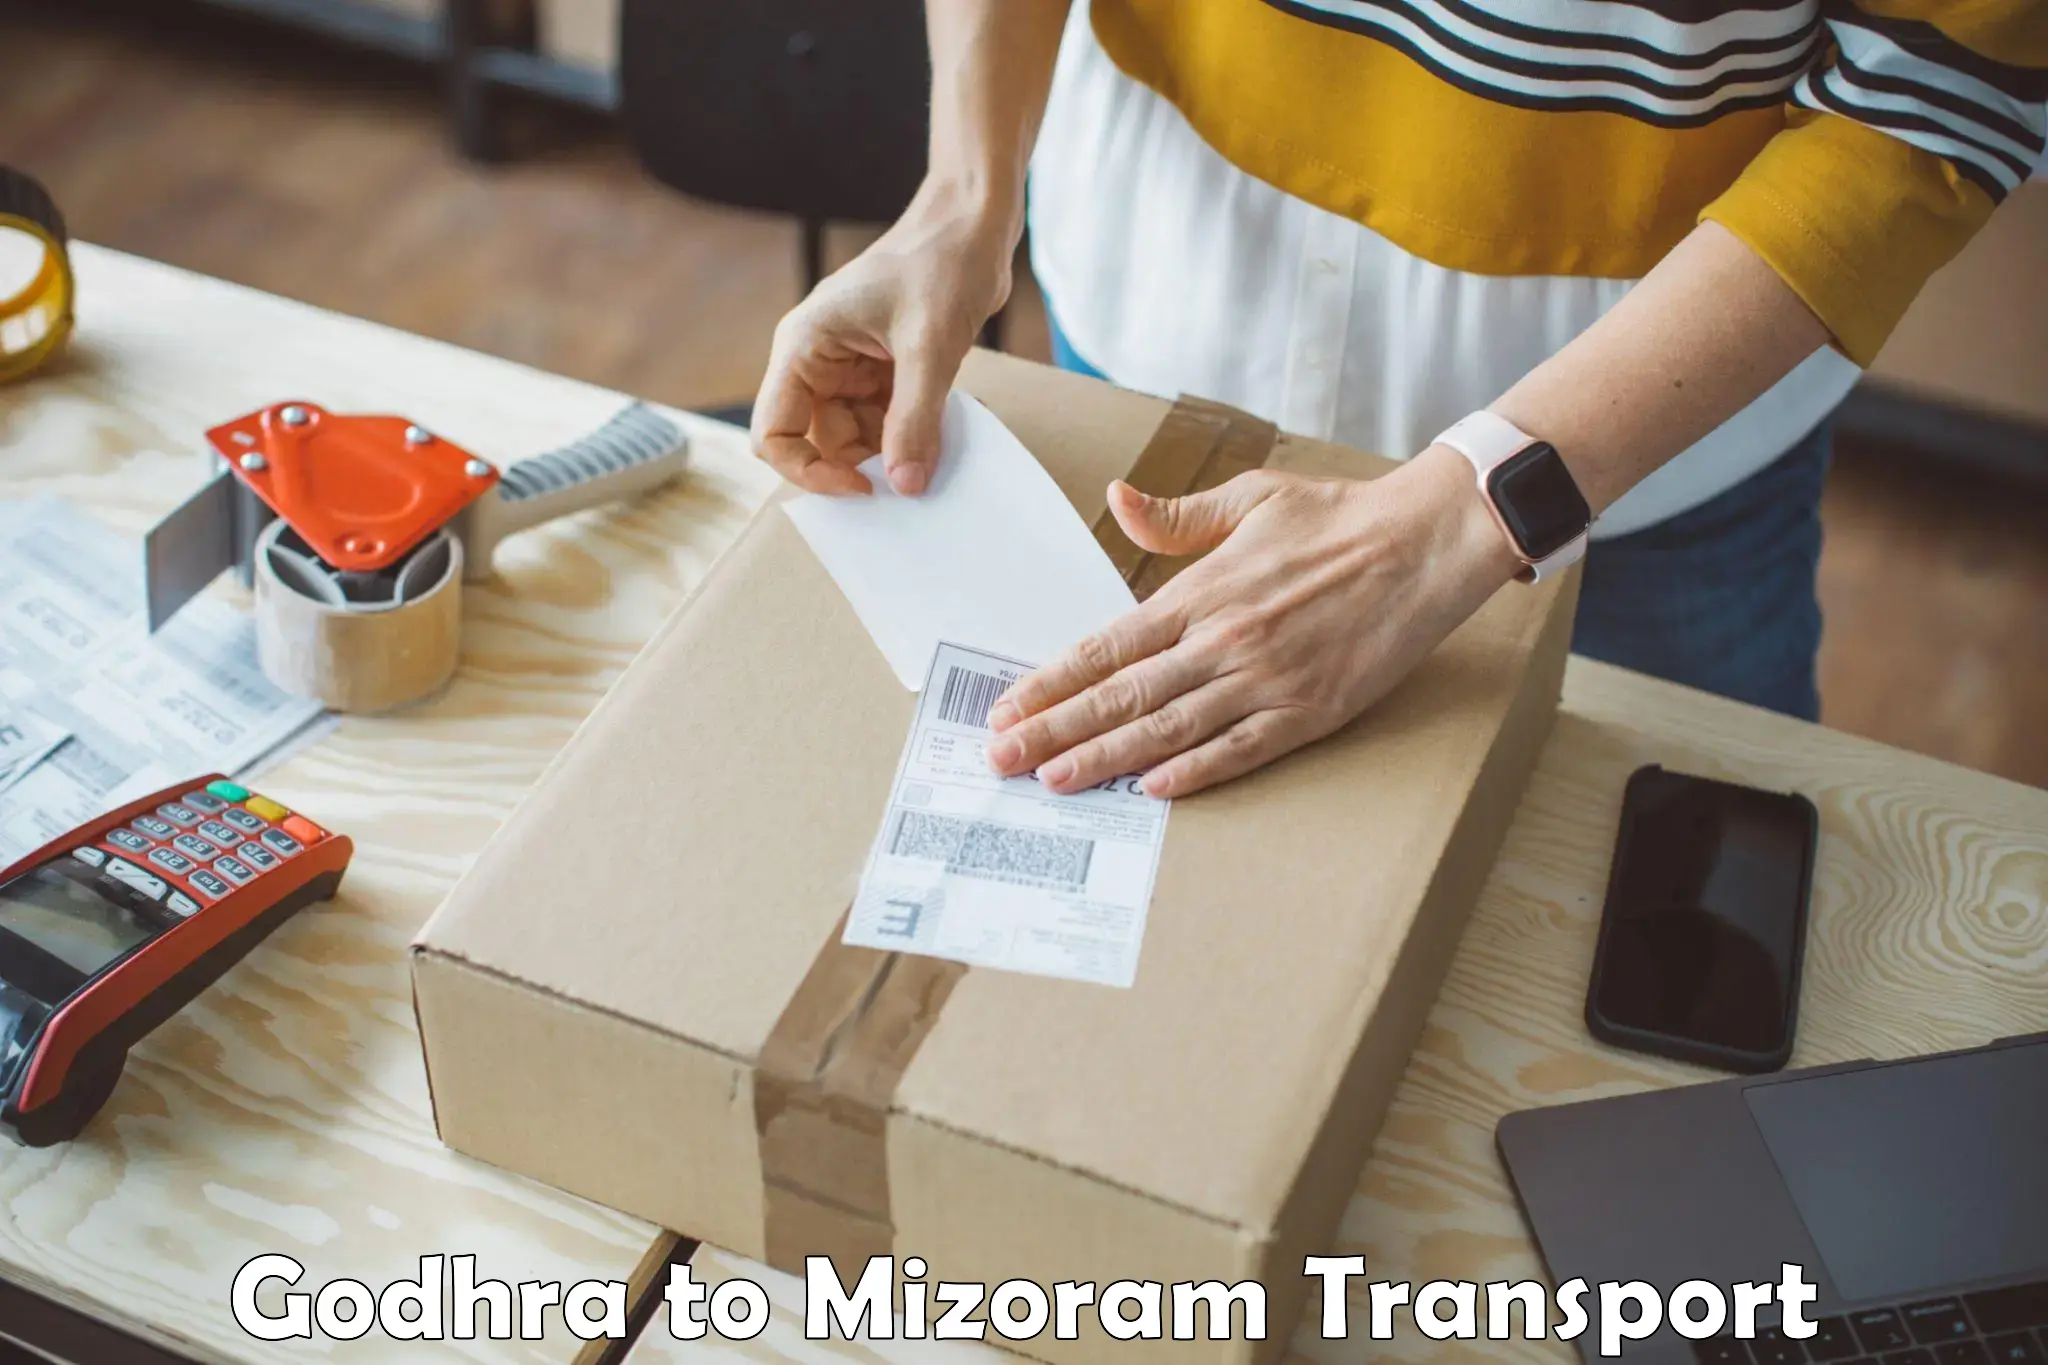 Transport in sharing Godhra to Mizoram